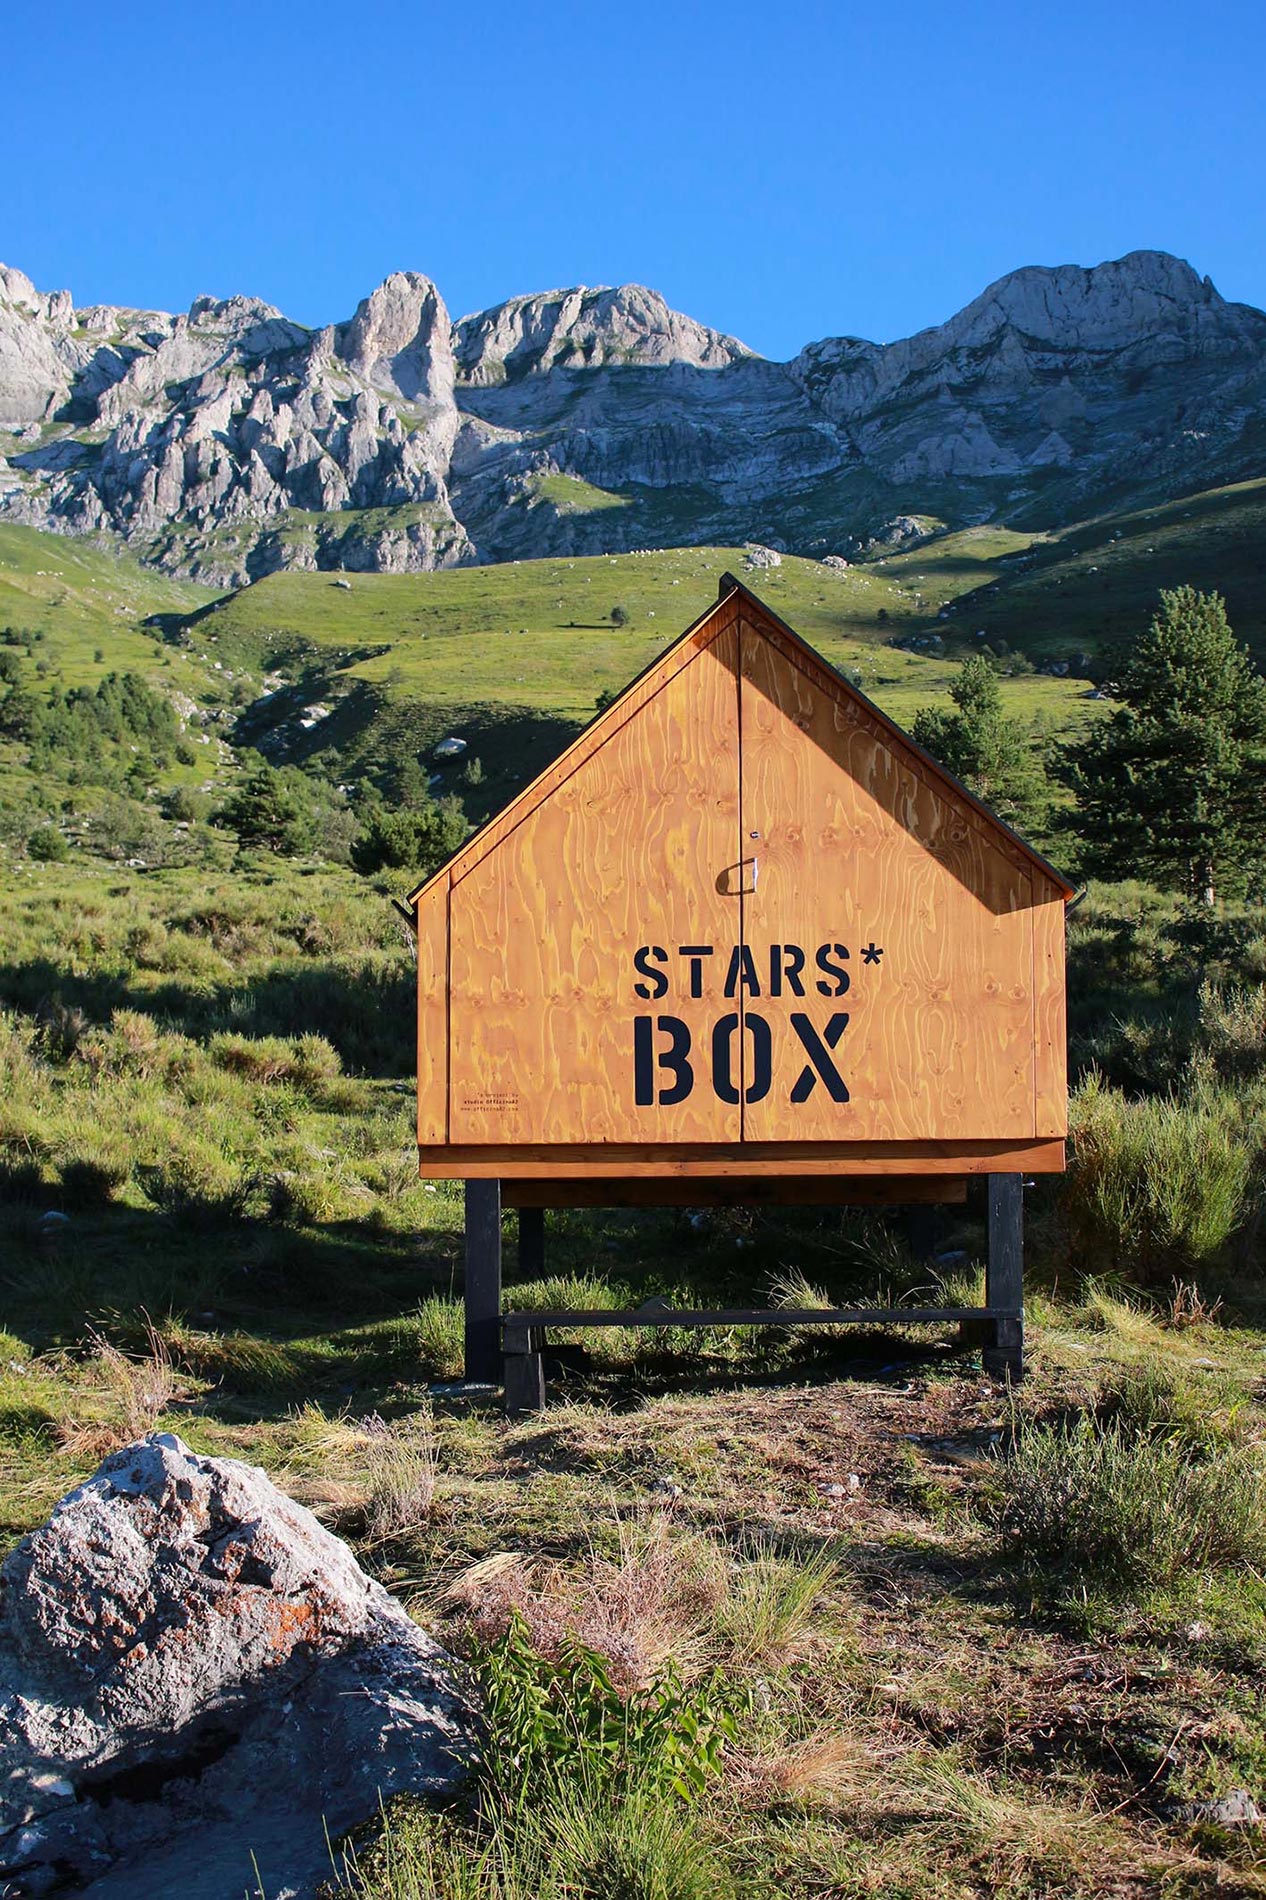 starsbox capsule hotel in montagna